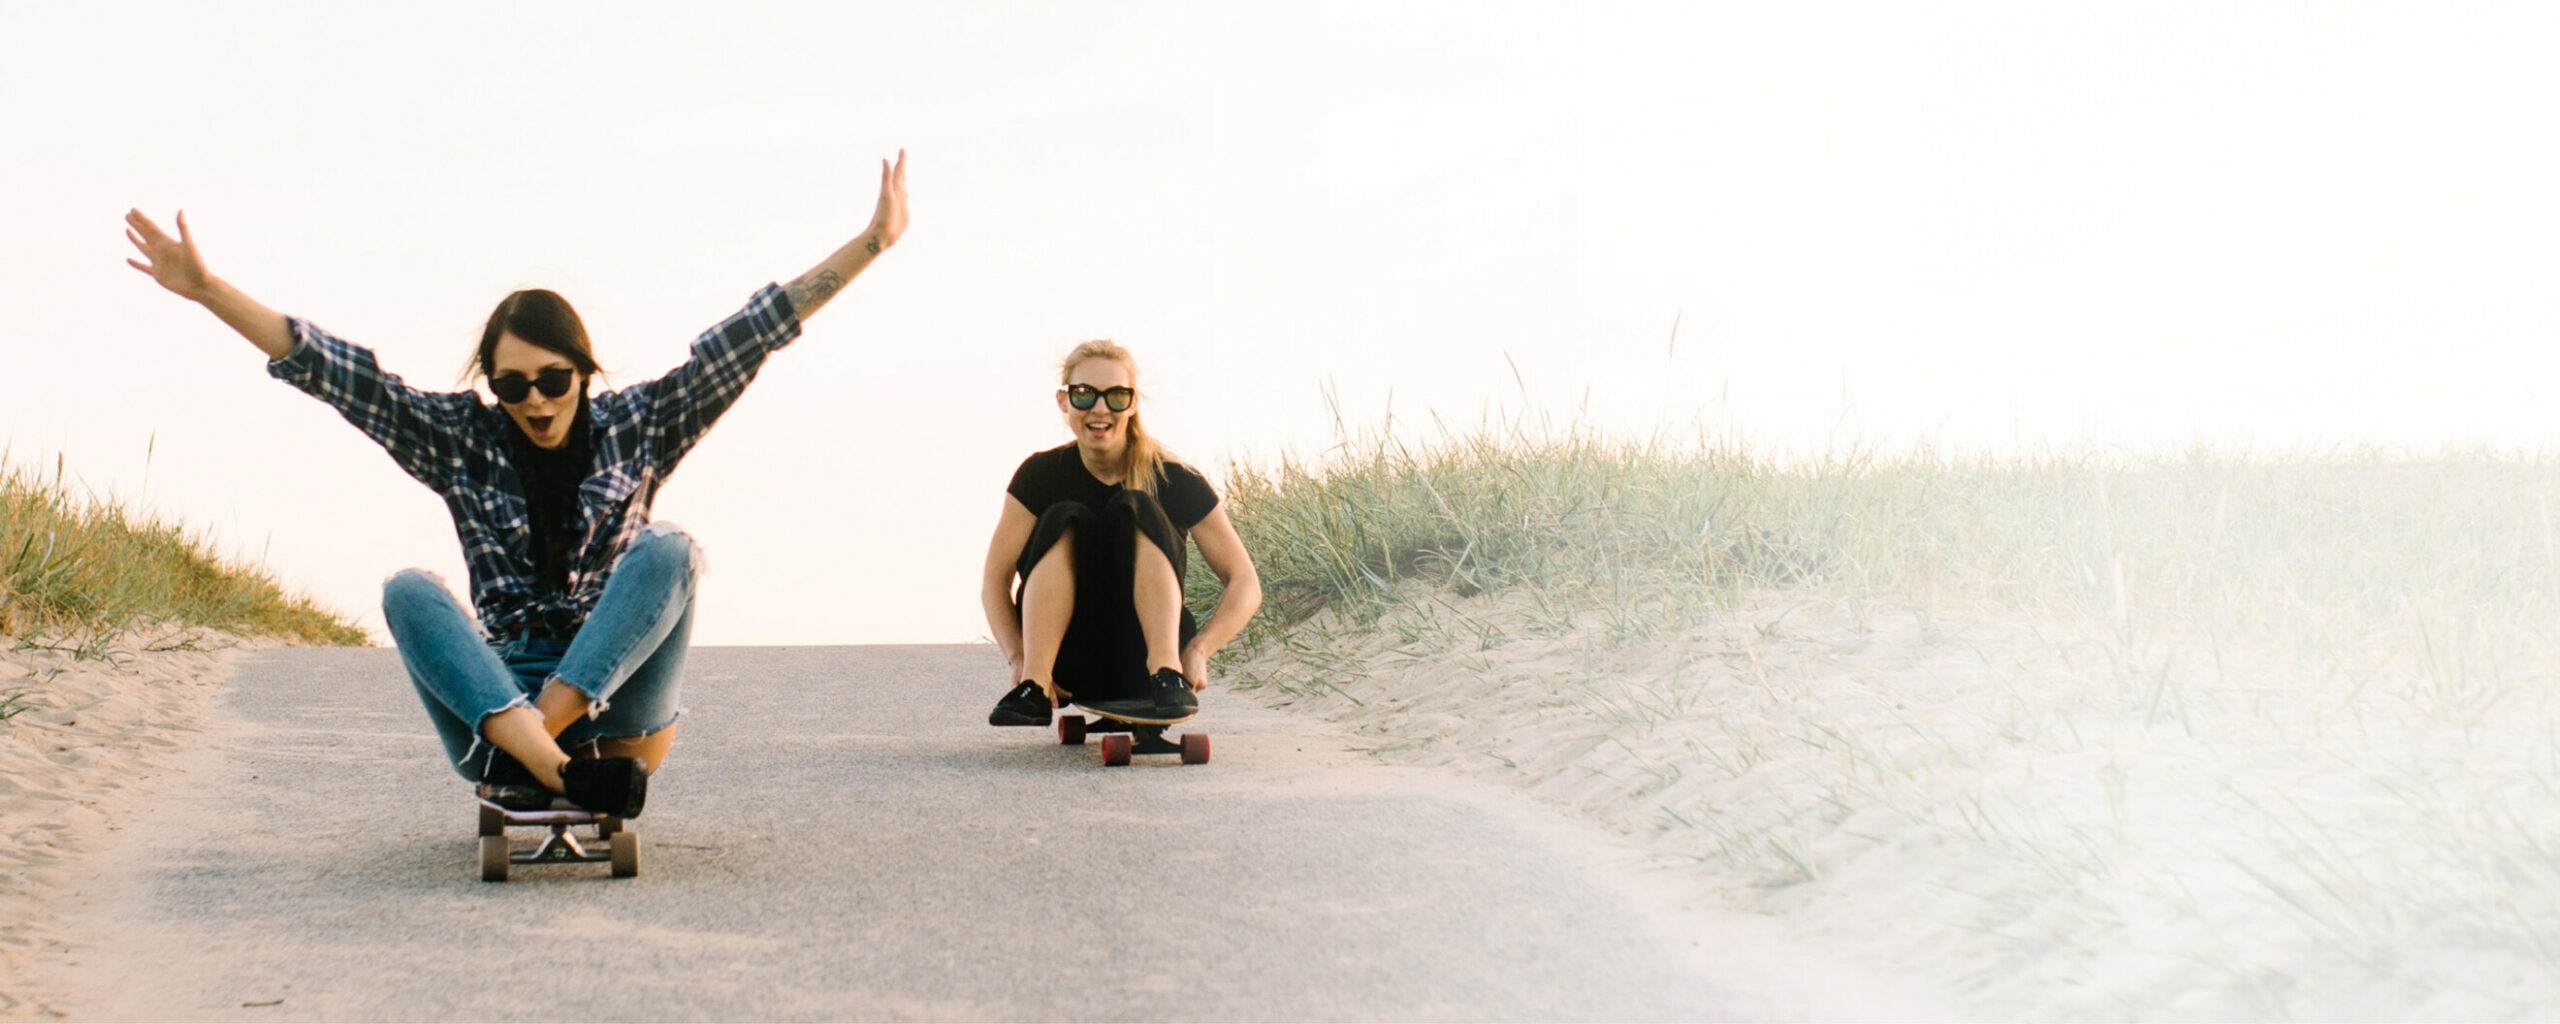 Zwei Frauen sitzen auf Skateboards und fahren eine Straße hinab: LTS gibt sein Wissen transparent und ehrlich weiter.